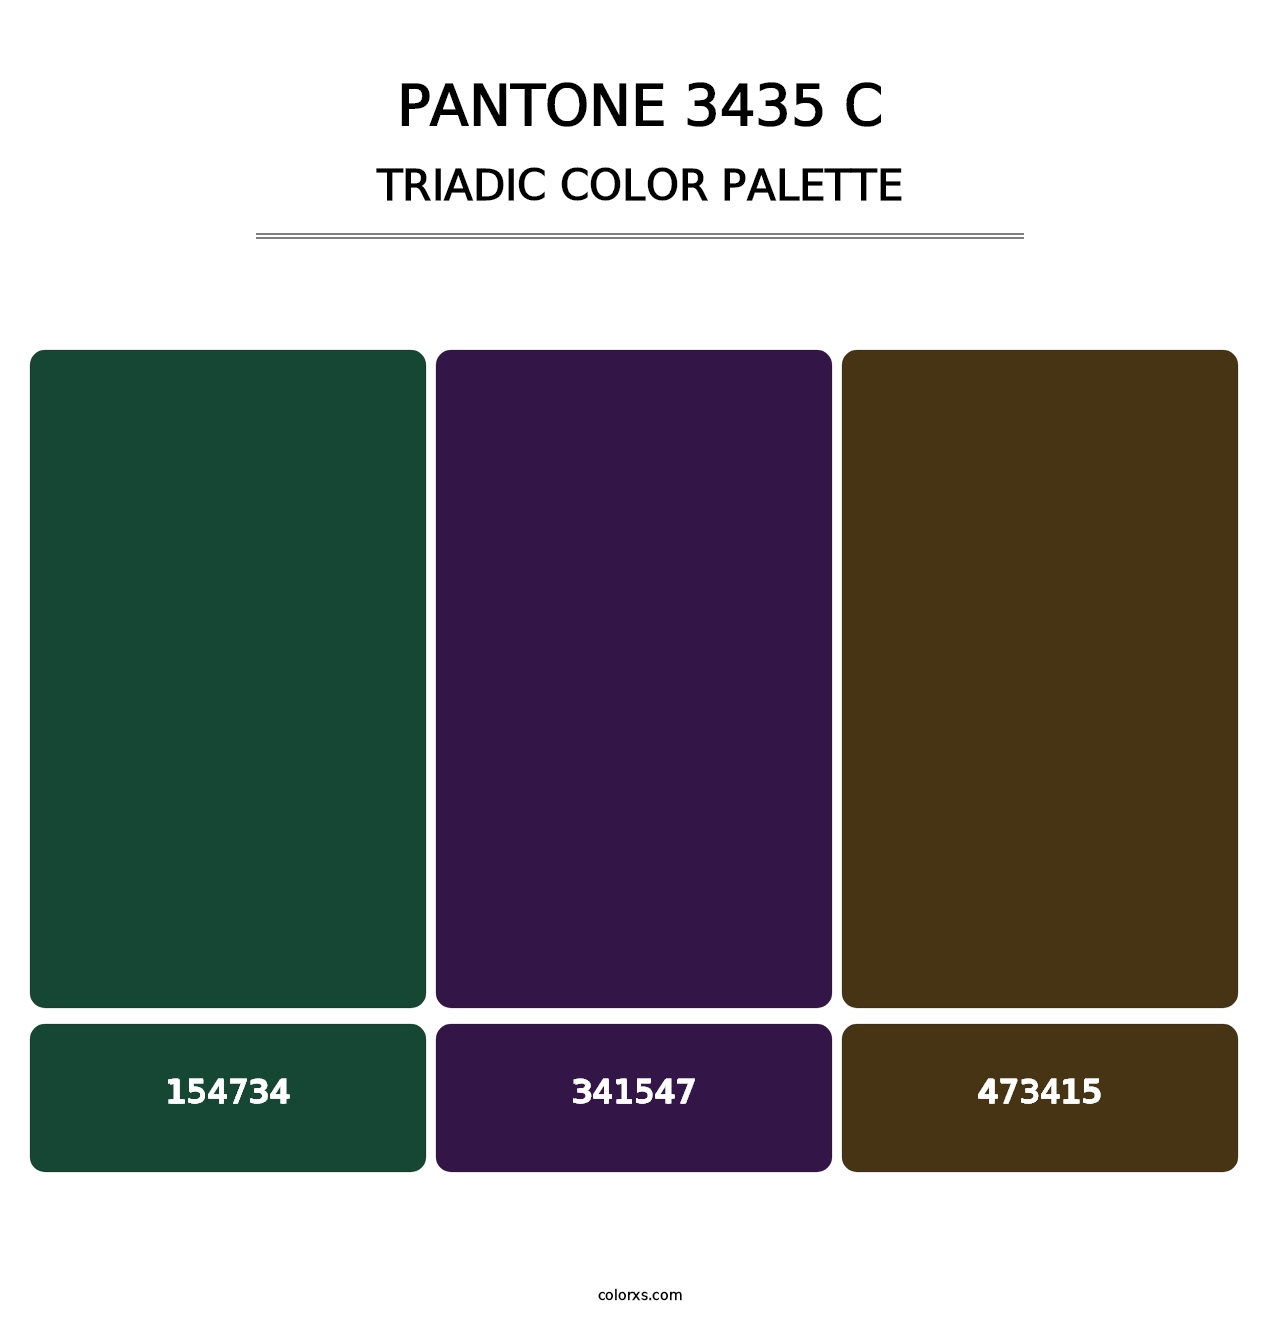 PANTONE 3435 C - Triadic Color Palette